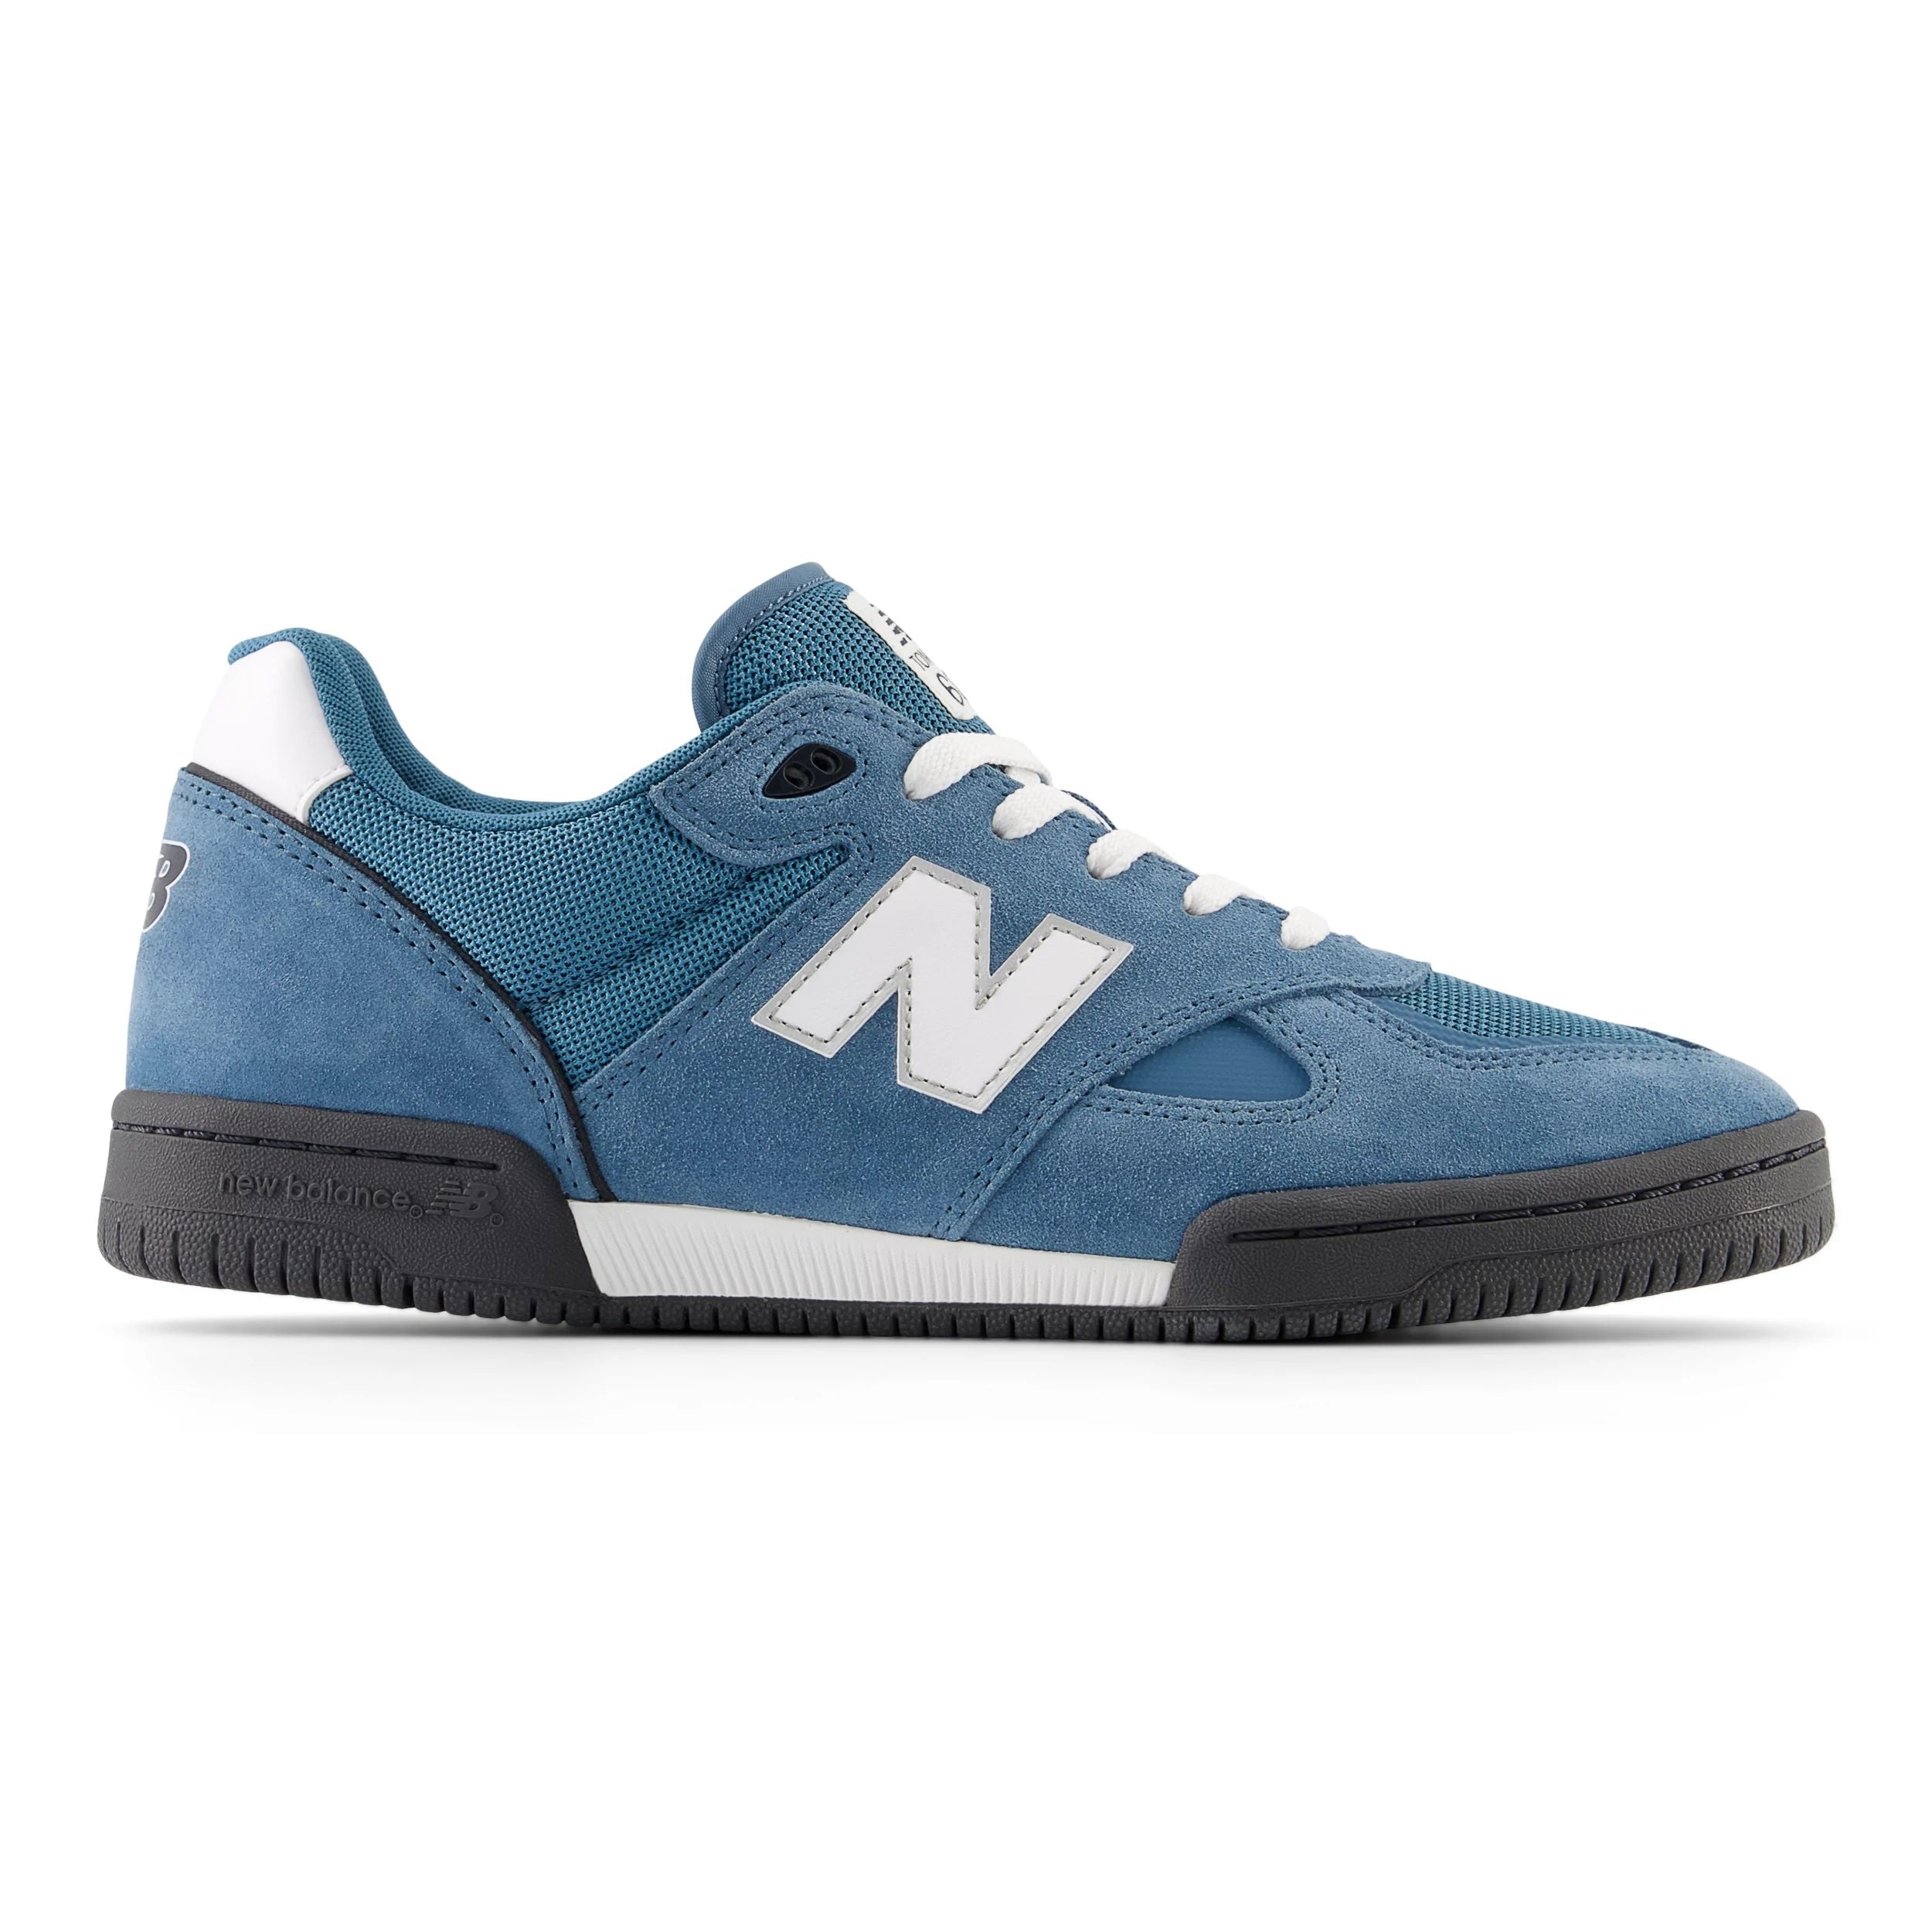 Elemental Blue Tom Knox NM600 NB Numeric Skate Shoe